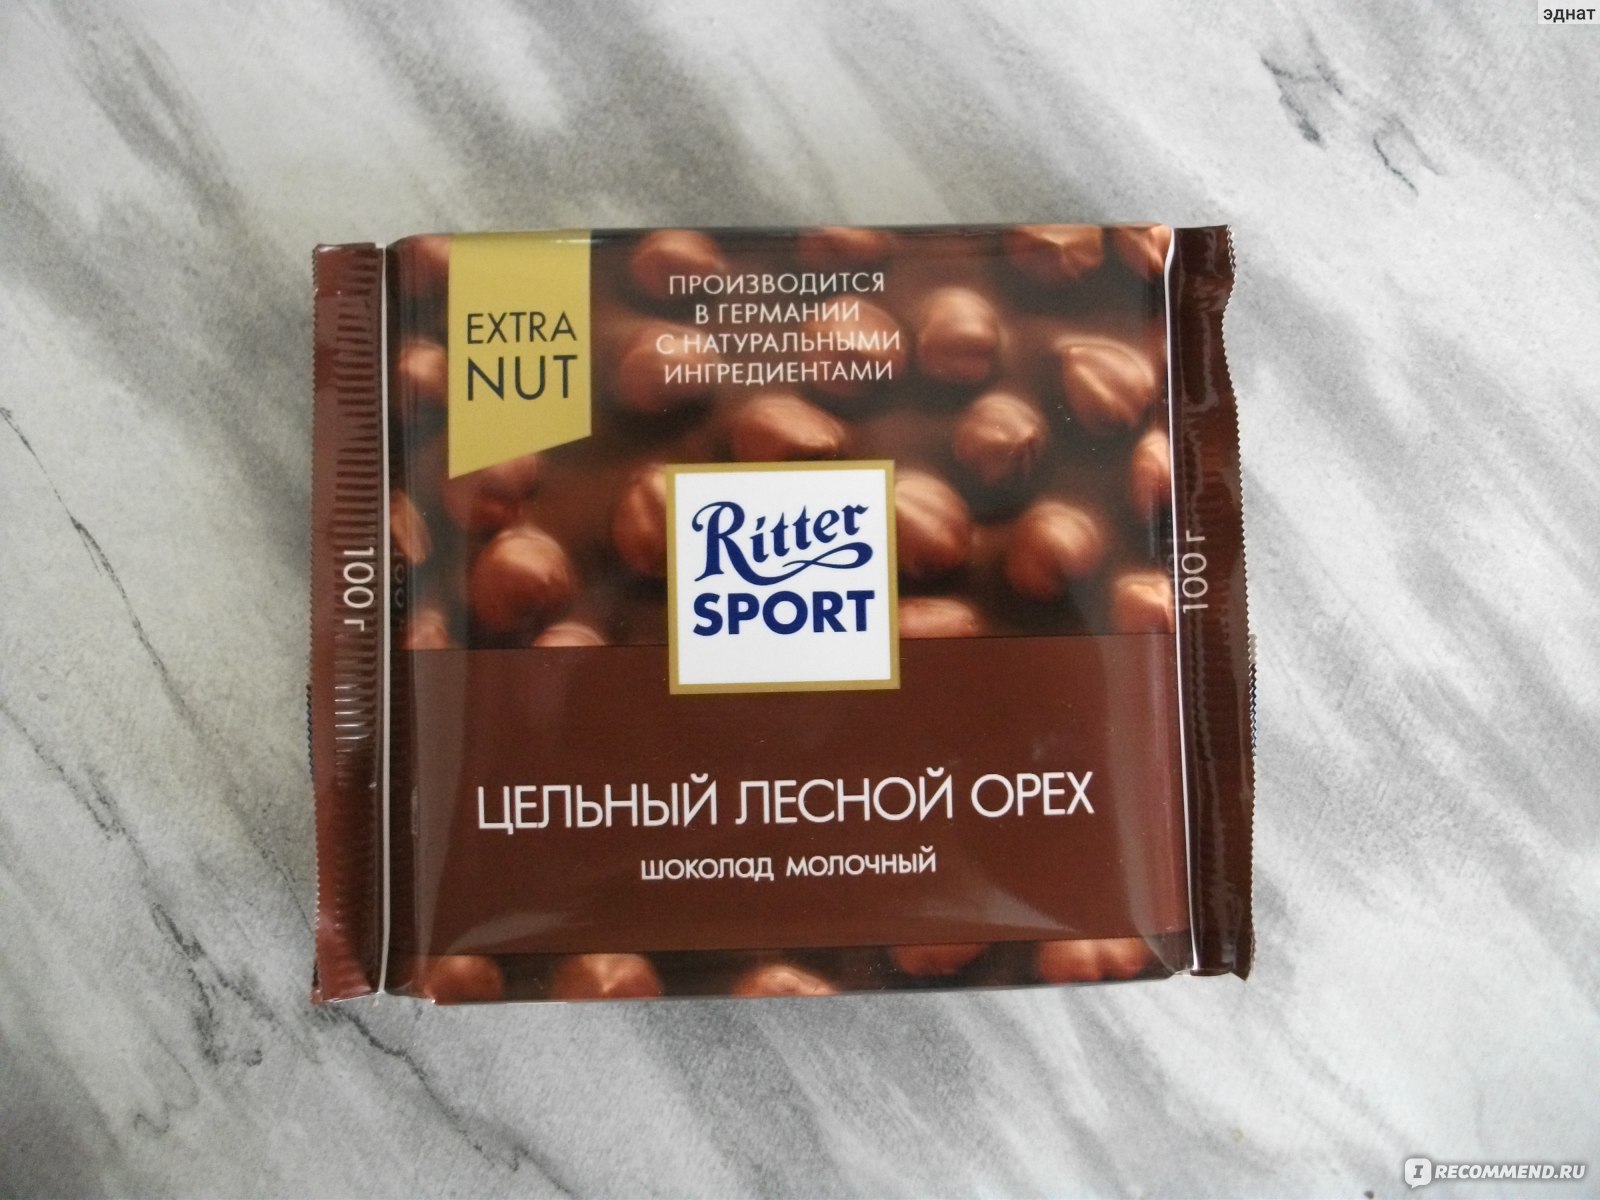 Риттер спорт шоколад с фундуком фото